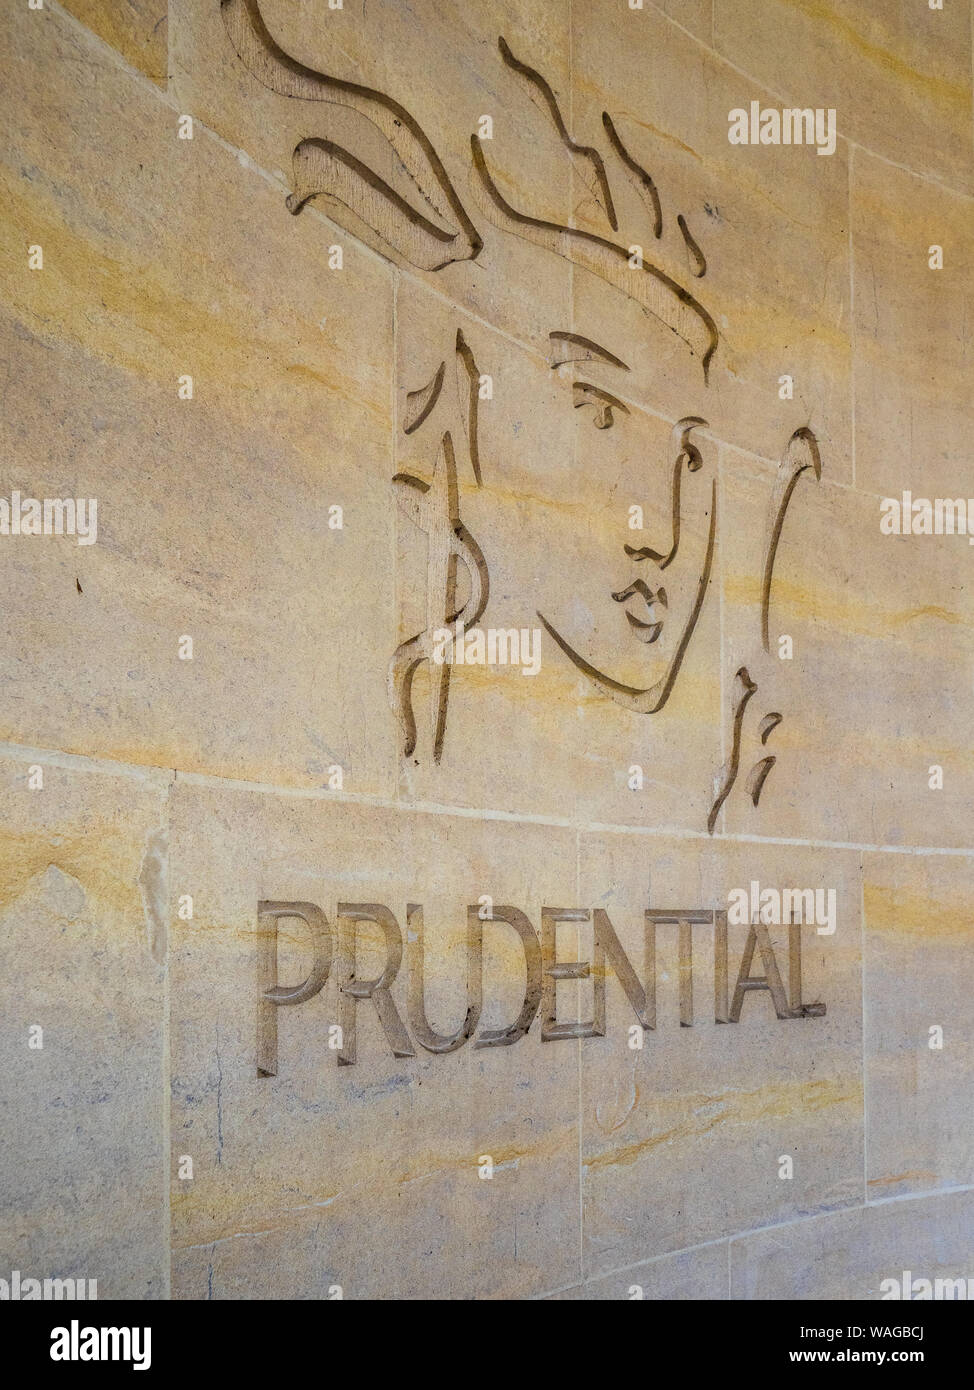 Prudential London Logo - Logo der Prudential Life Insurance and Financial Services Company, das in die Wand eines Gebäudes in Central London UK eingemeißelt wurde Stockfoto